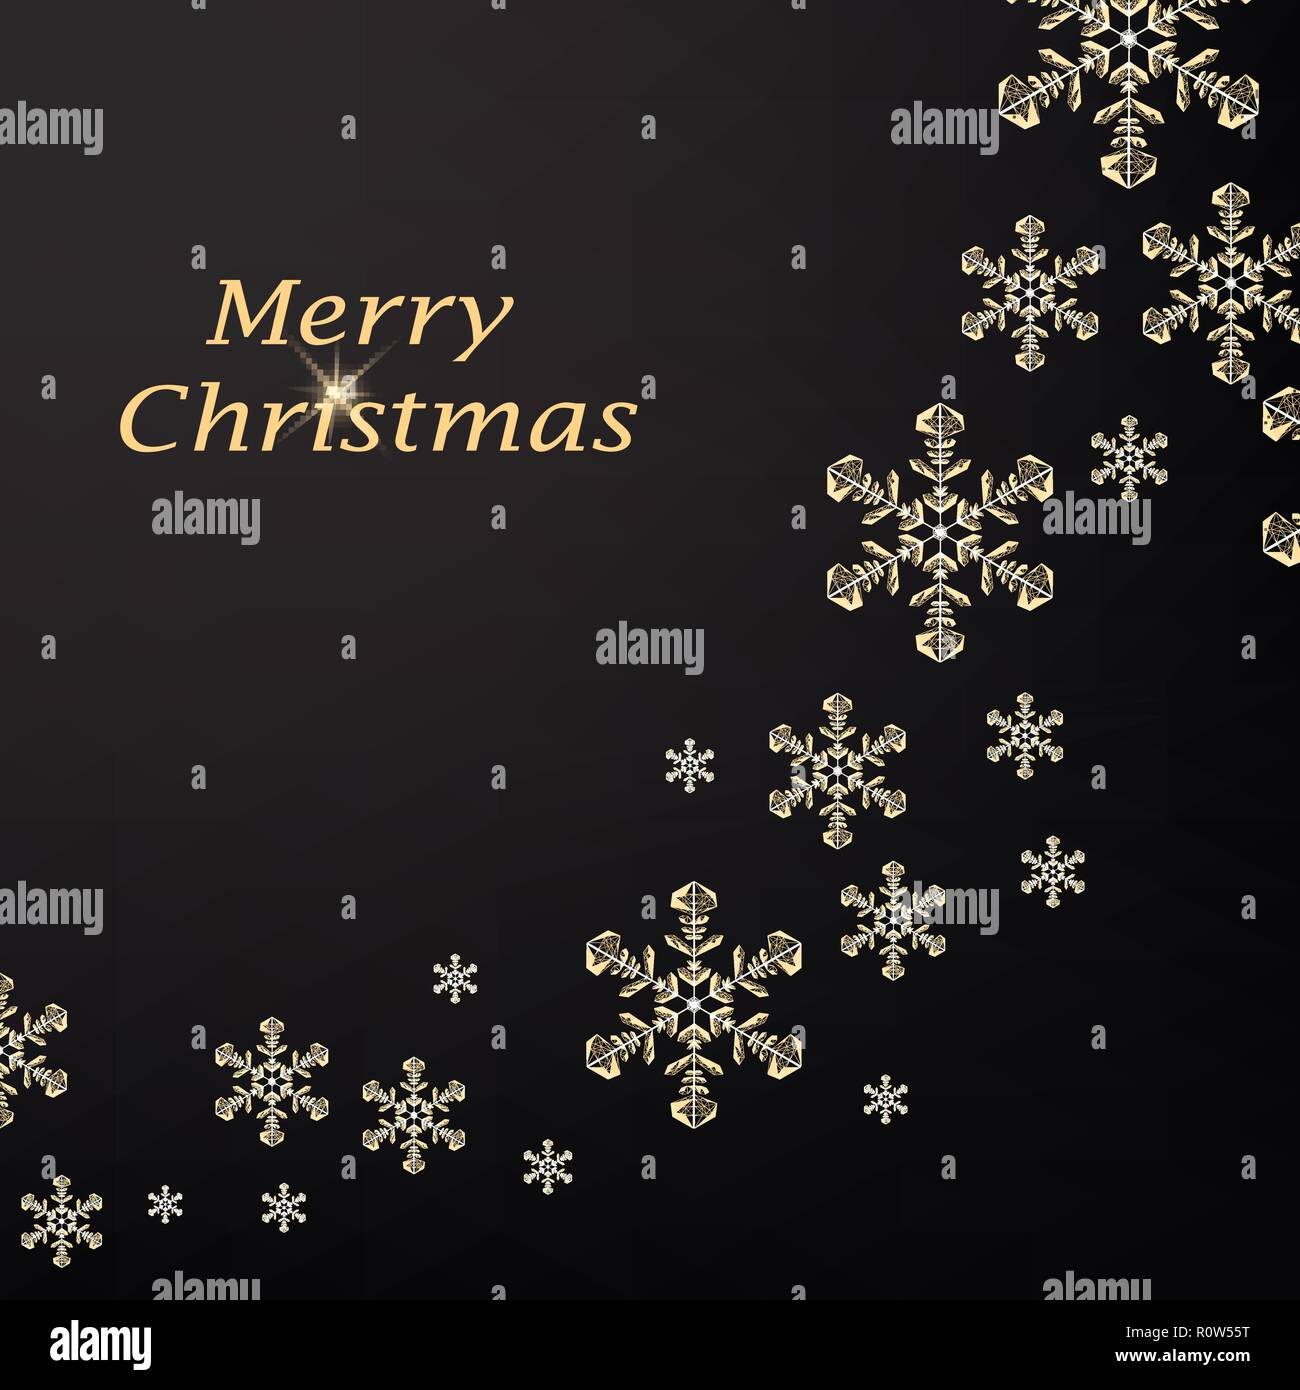 Merry Christmas greeting card con oro fiocchi di neve poligonale e scritte. Cartolina luminosi per le vacanze. Illustrazione Vettoriale su sfondo scuro Illustrazione Vettoriale